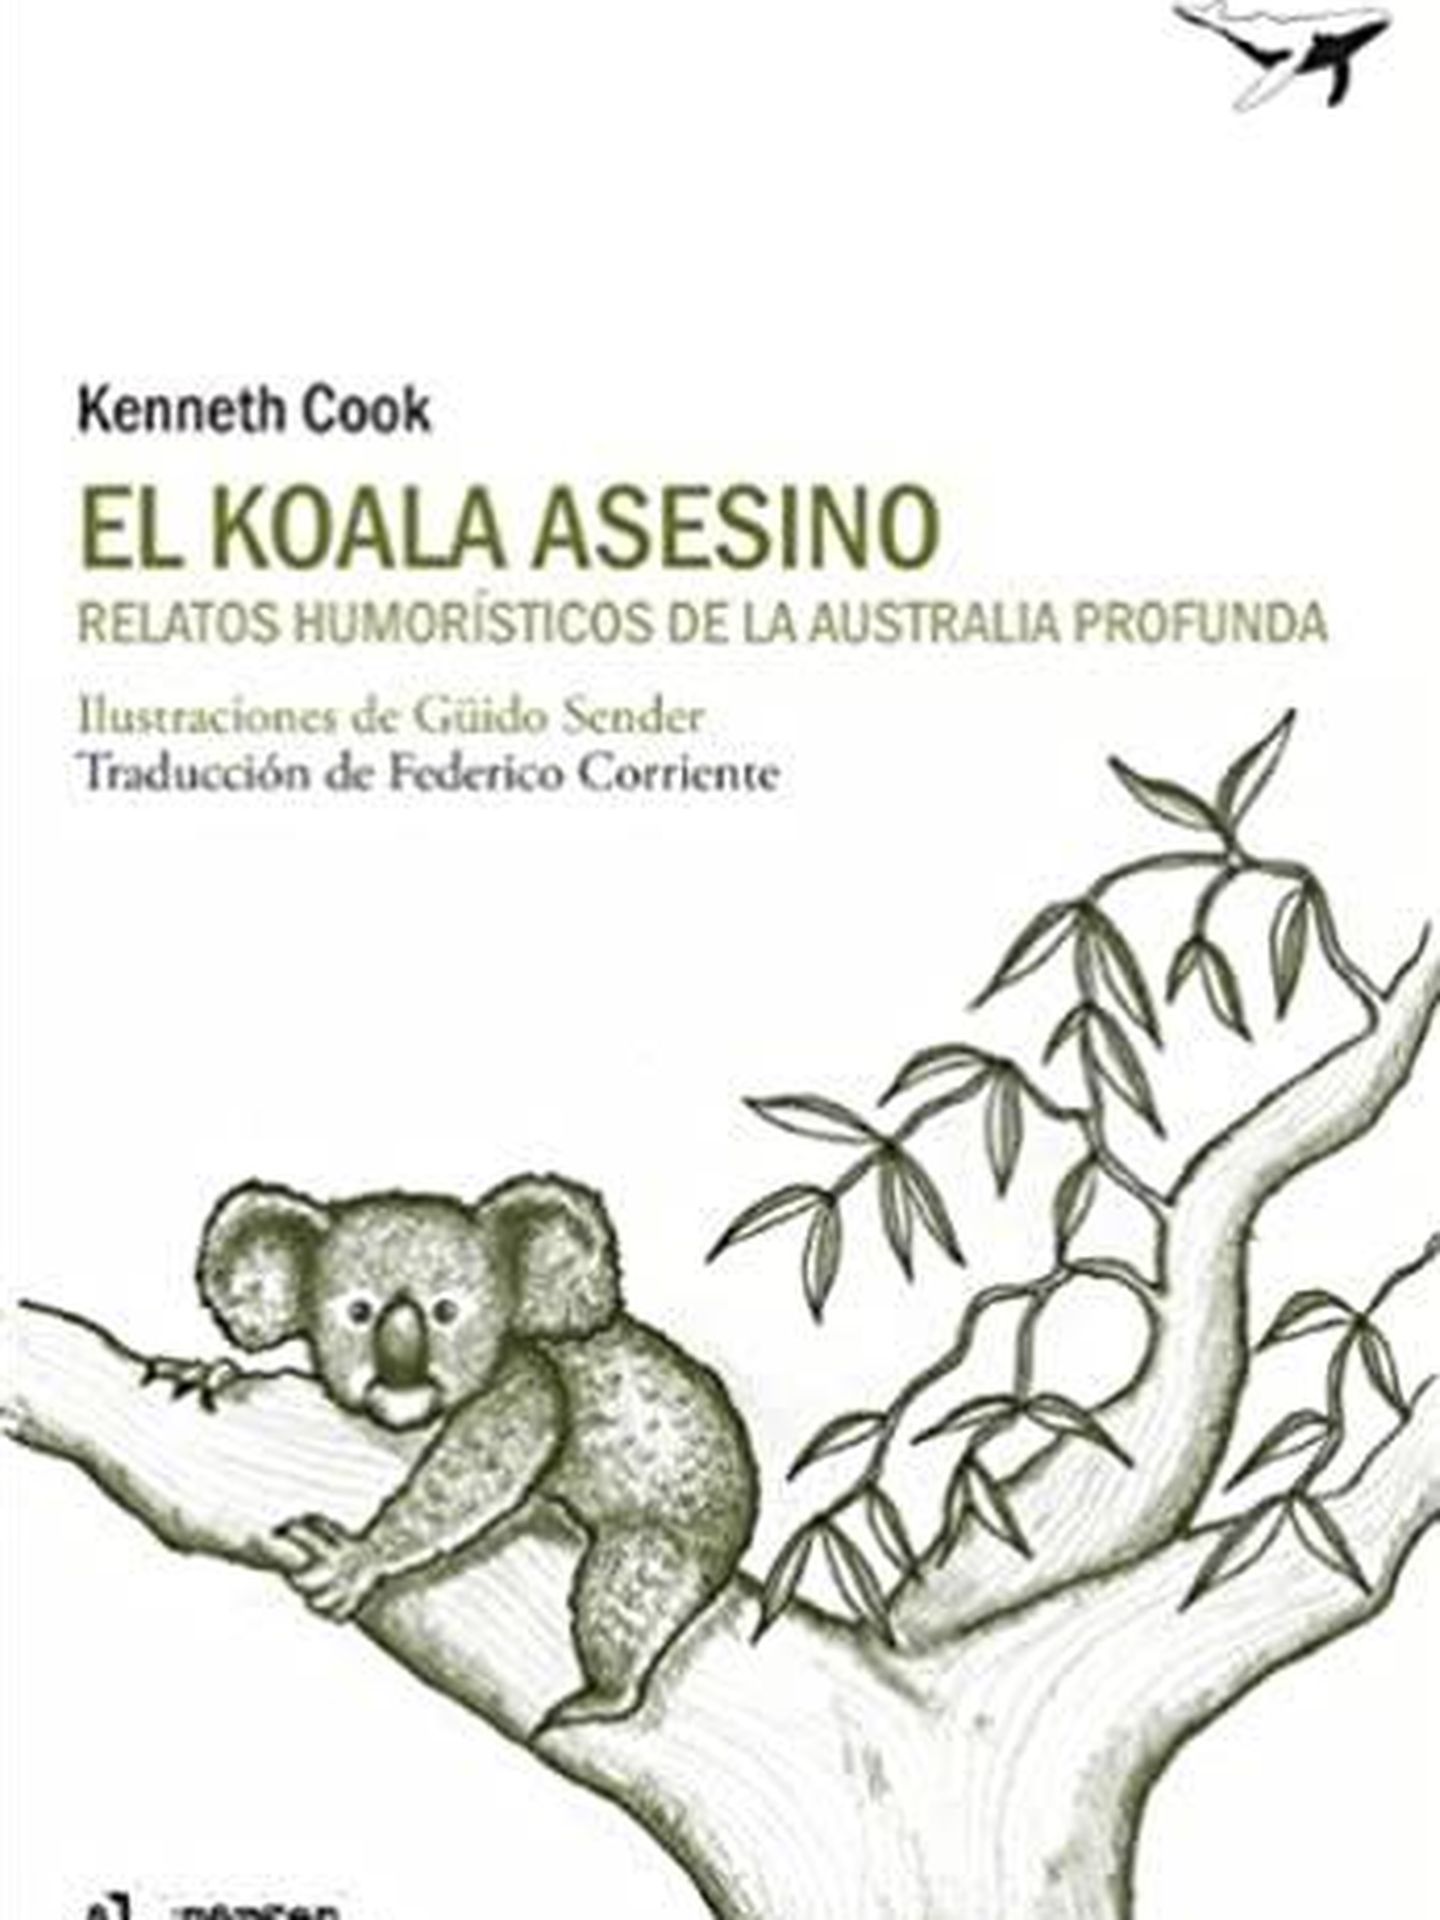 'El koala asesino'.